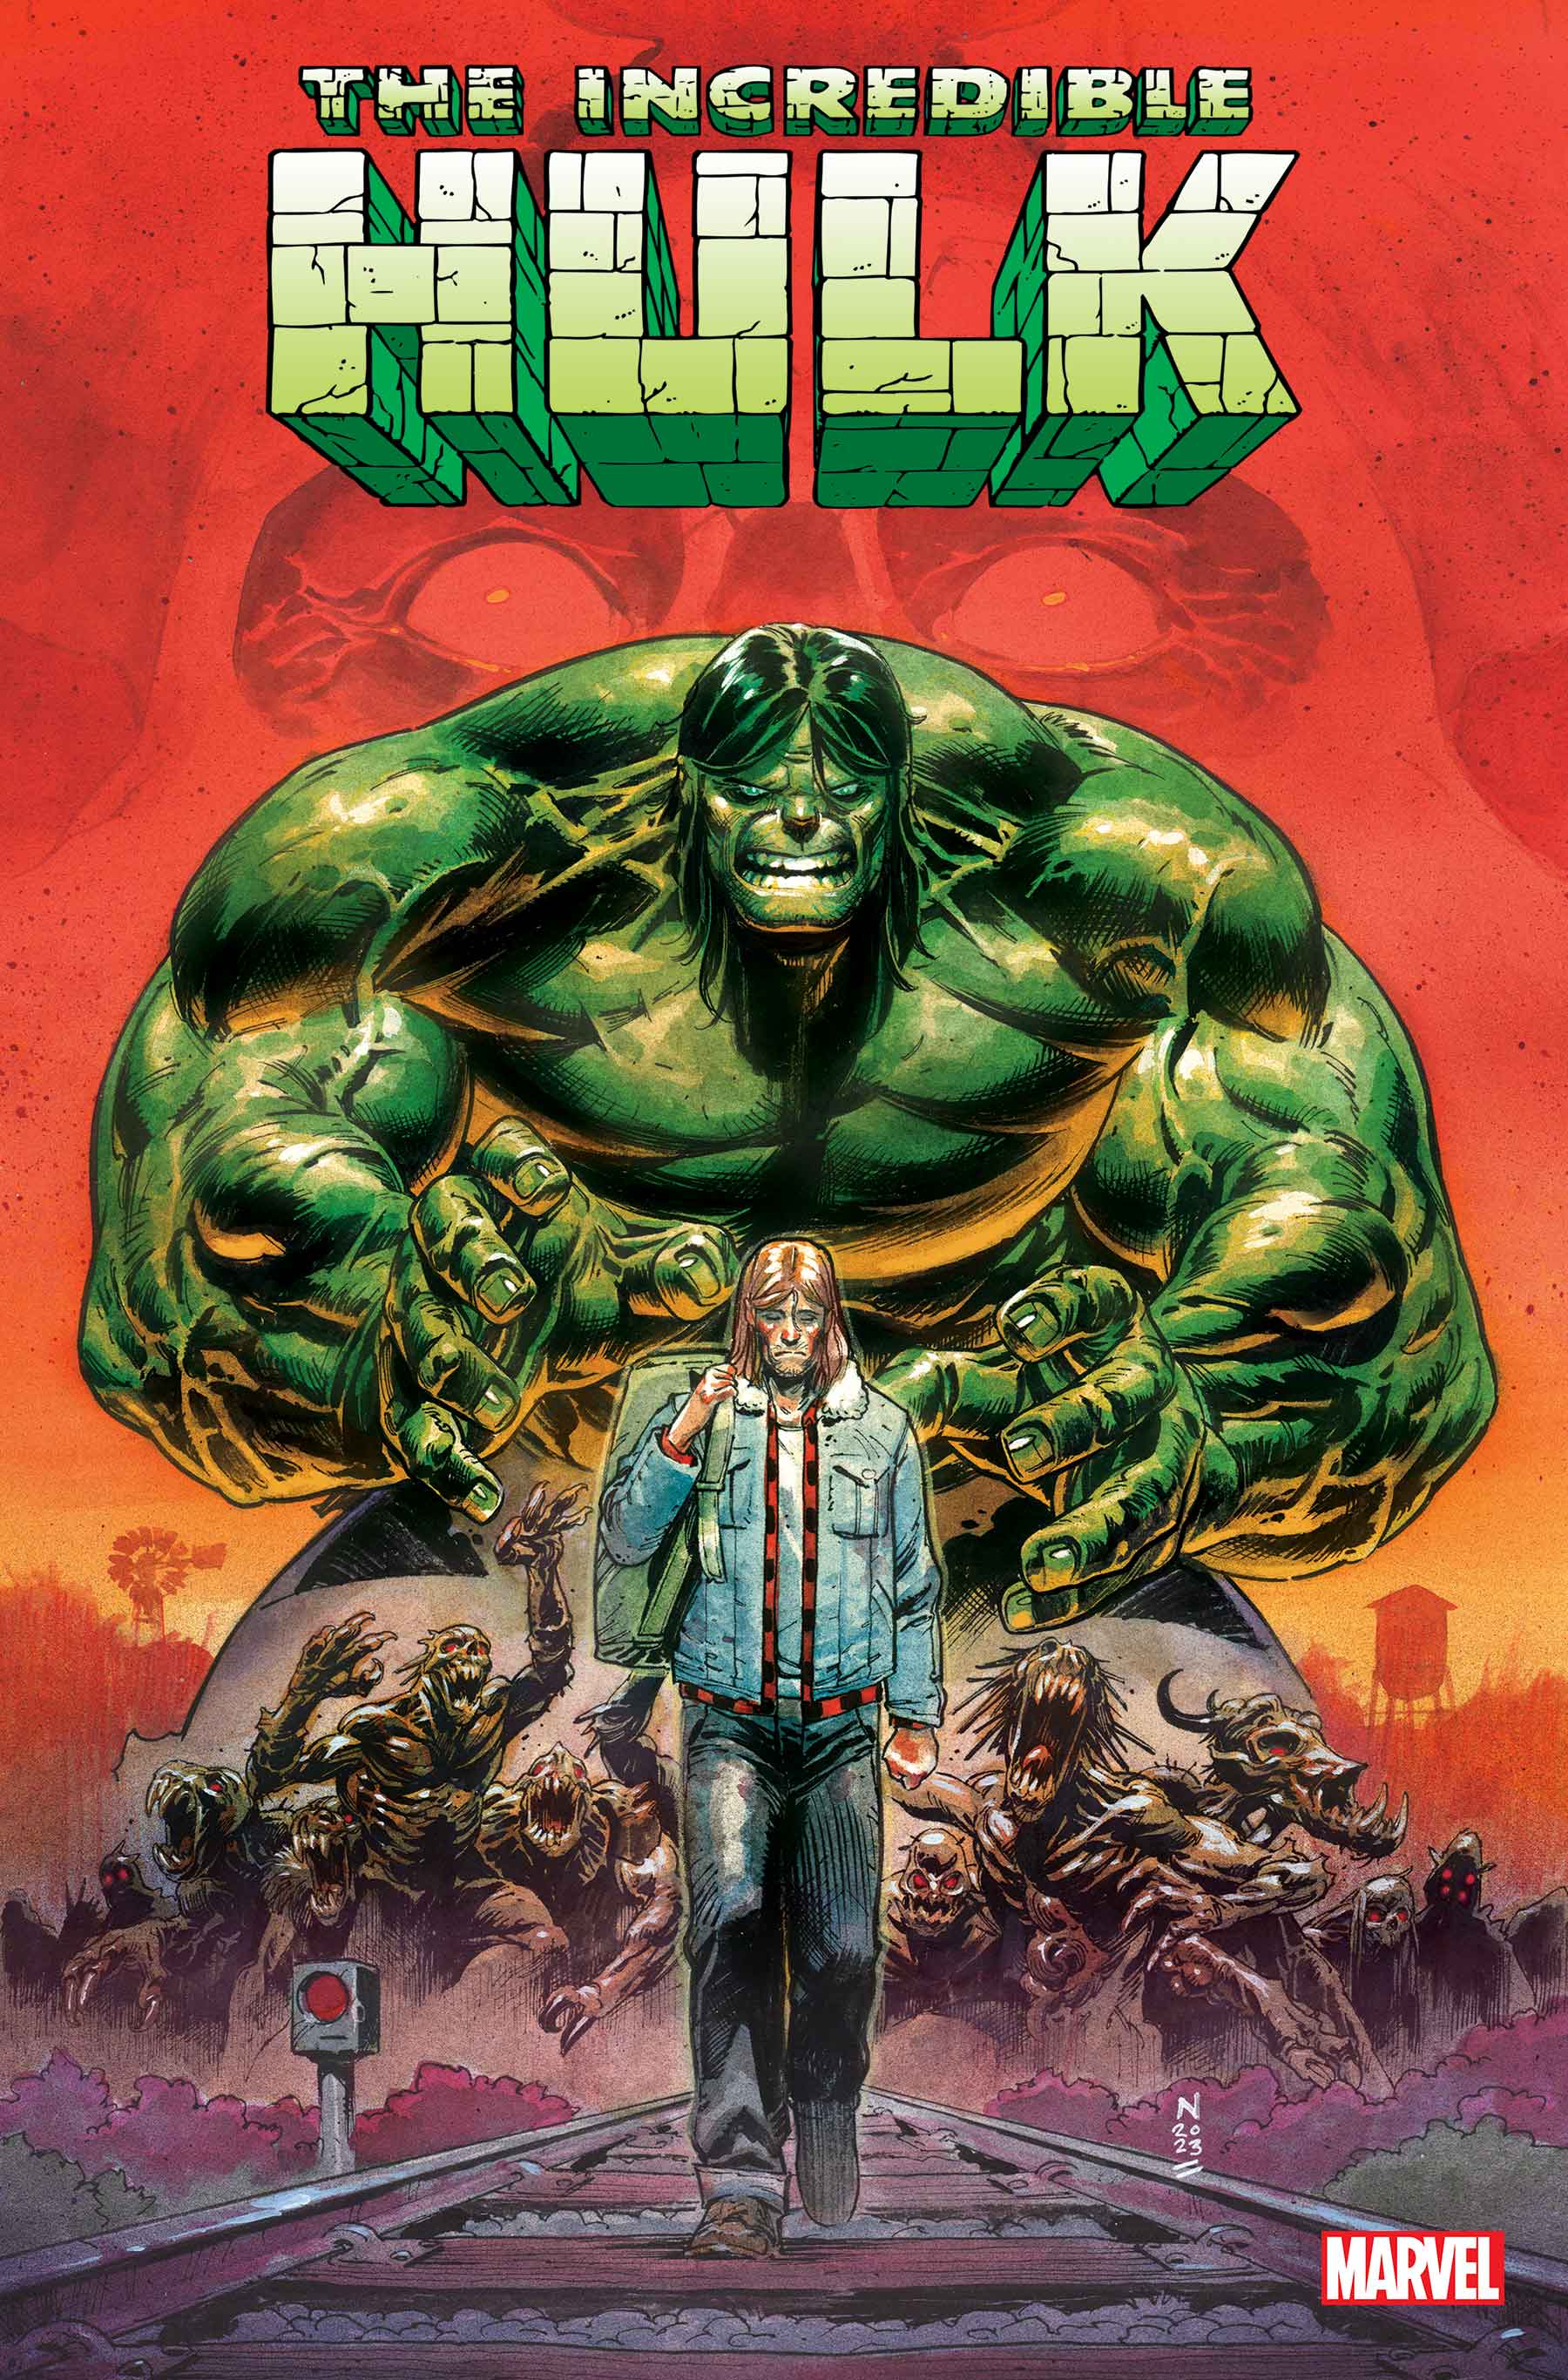 Incredible Hulk #1 cover